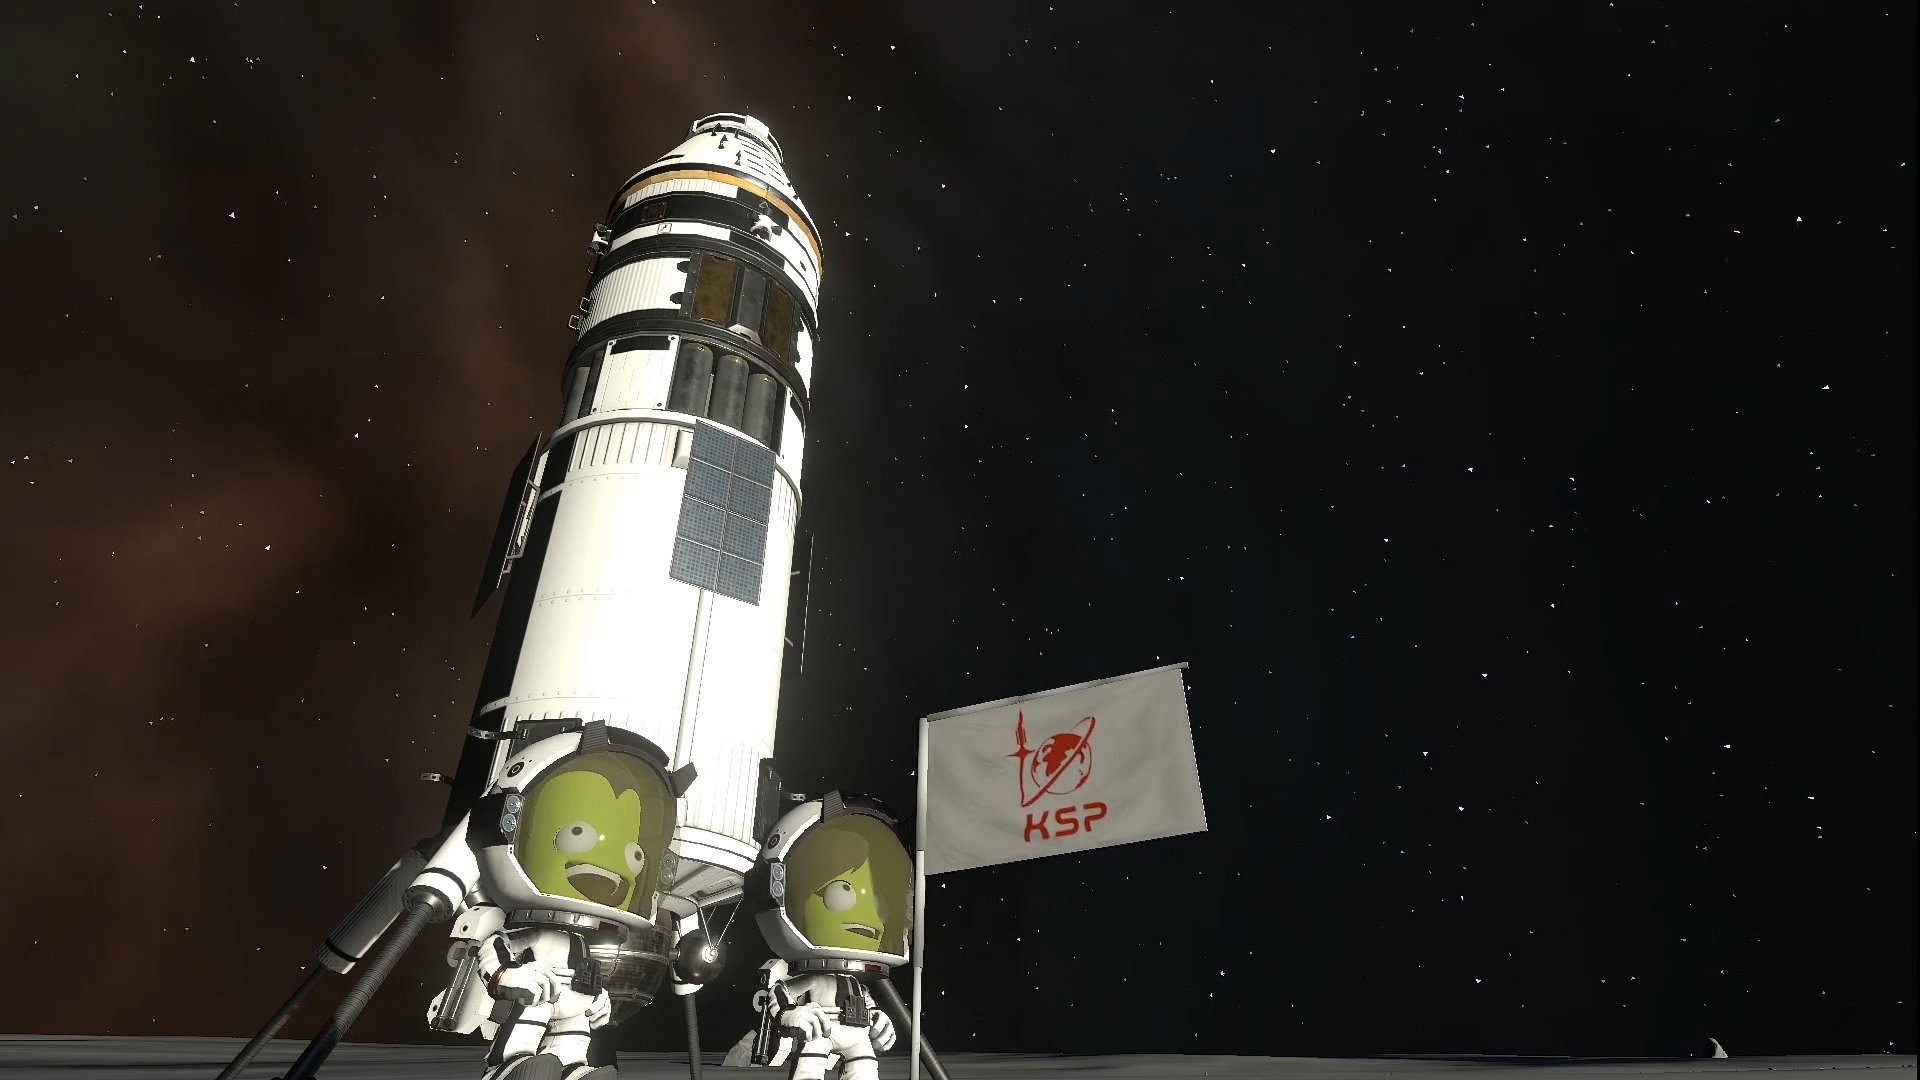 Kerbal Space Program 2: Pratinjau tampilan pertama dari PAX West 2019